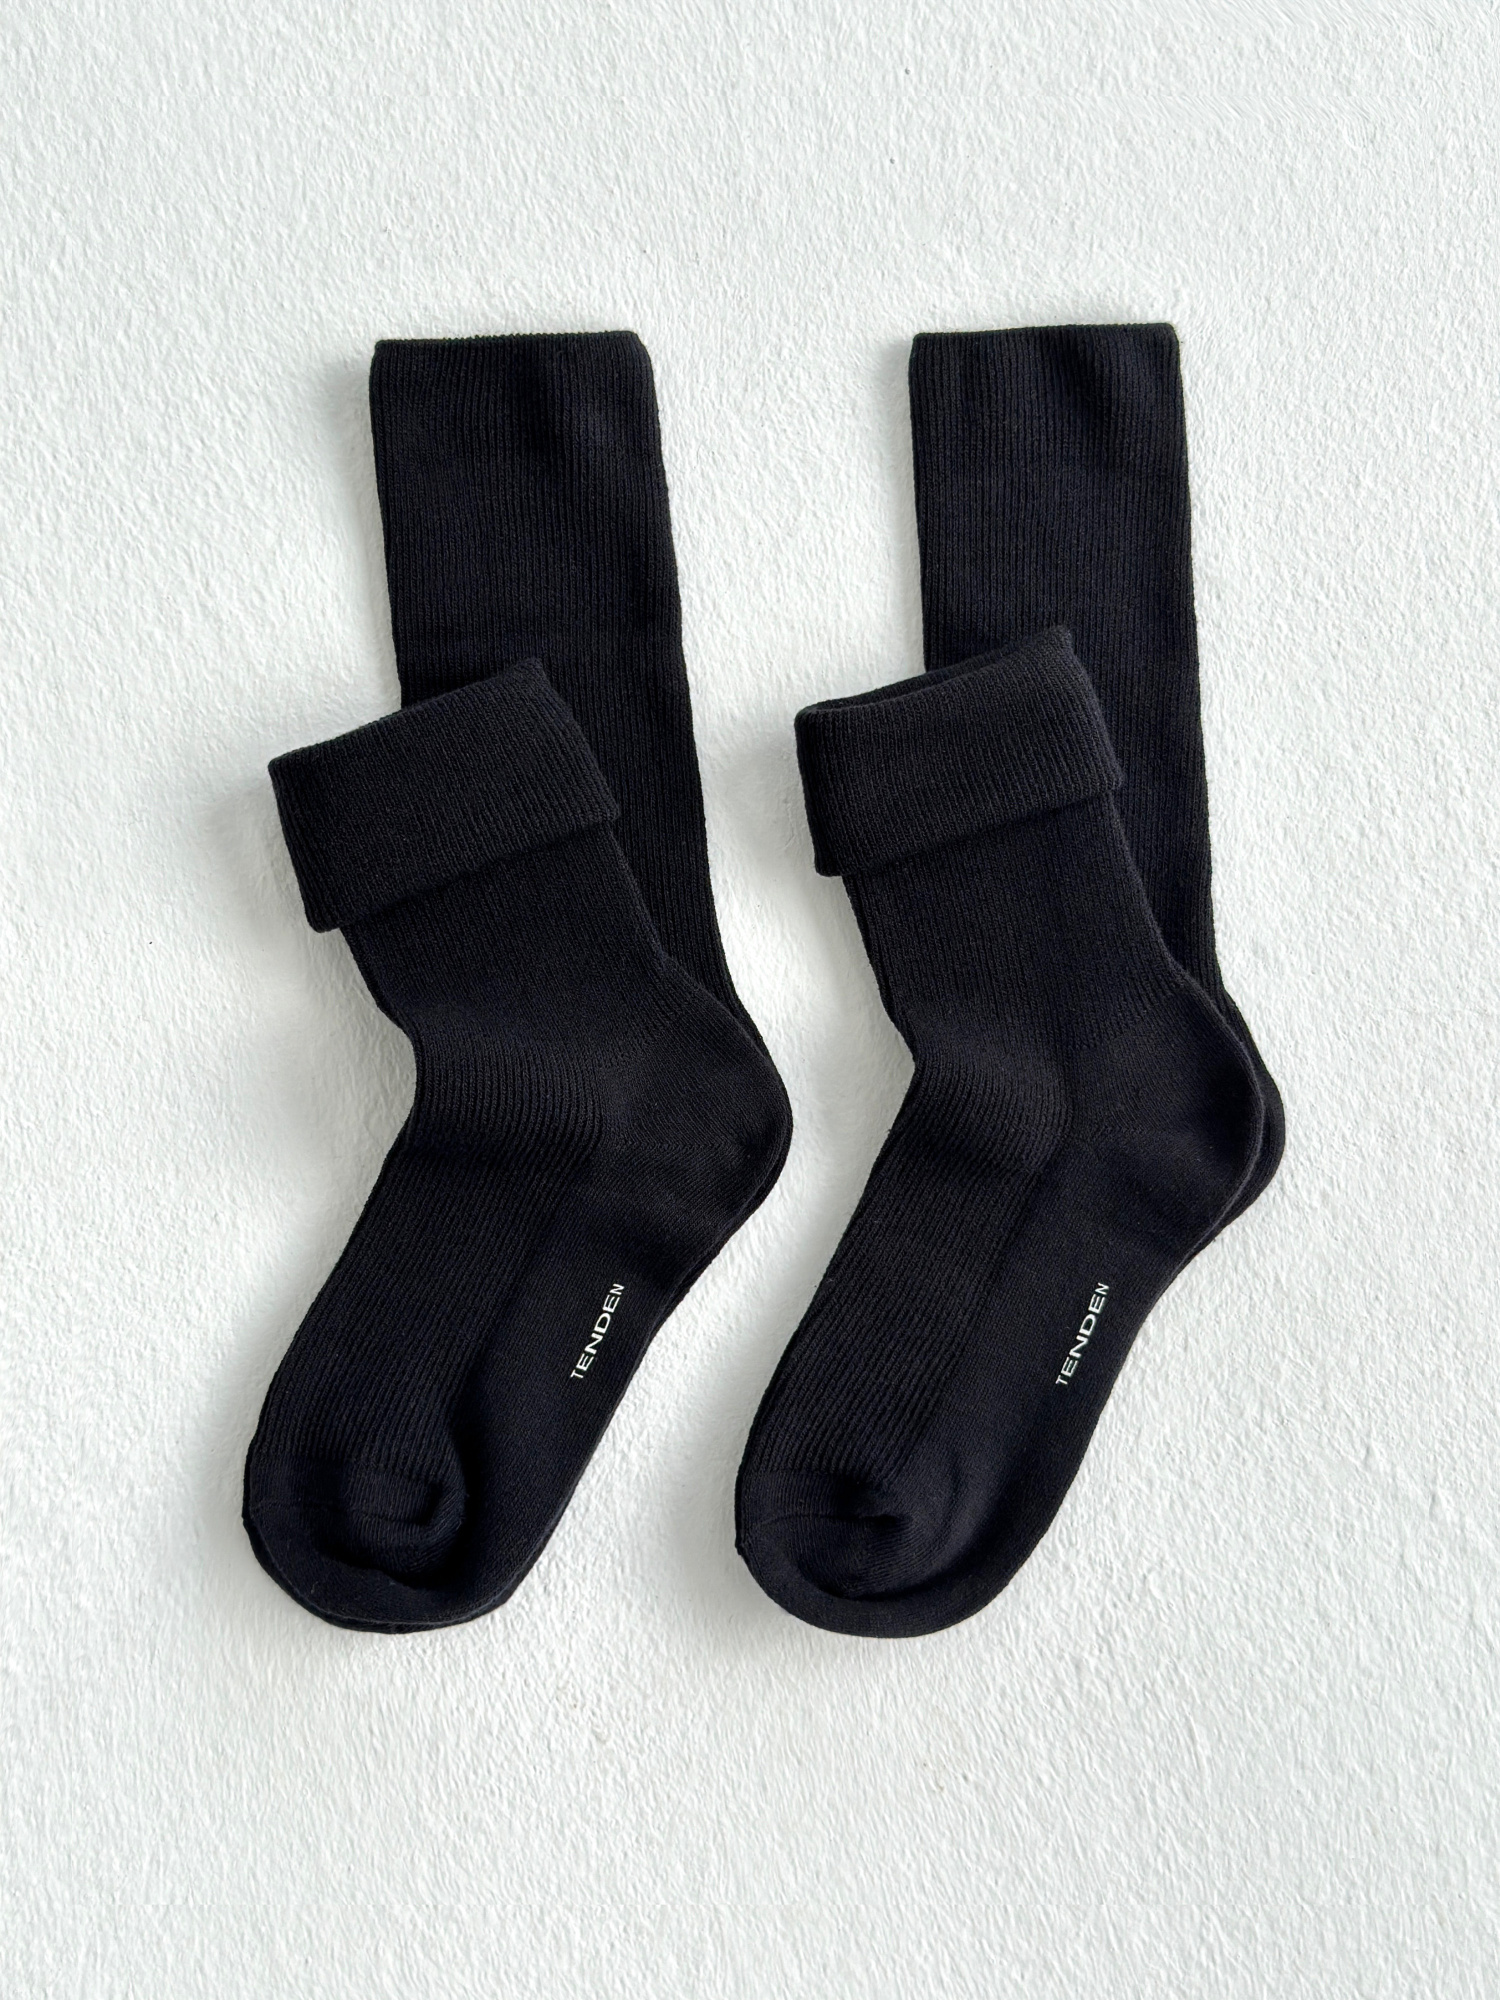 Комплект носков женских TENDEN WSF21/04M черных 36-39, 2 пары